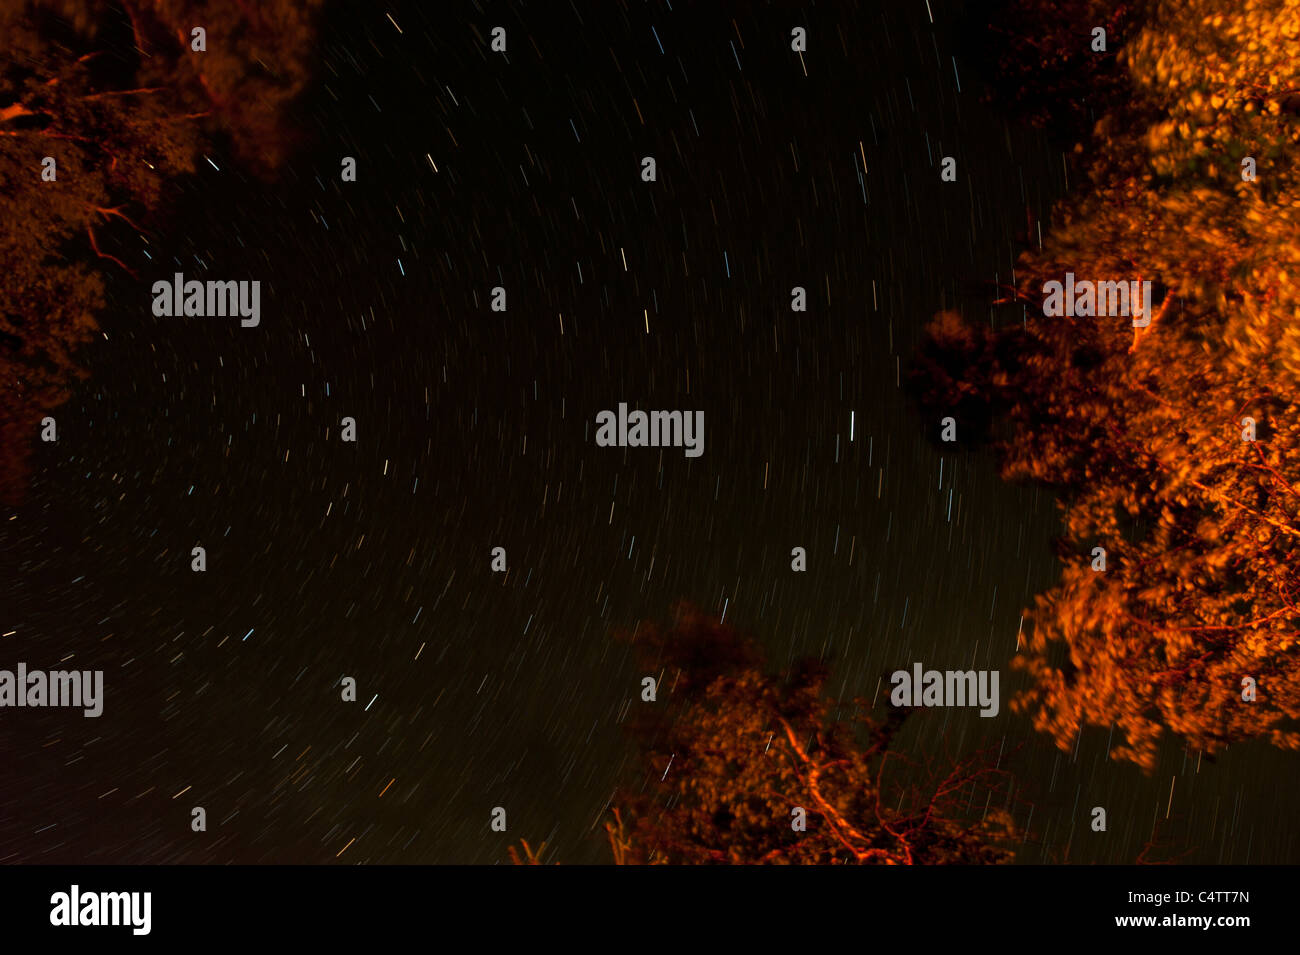 ILLUMINATED TREES AND STARS IN SKY Stock Photo